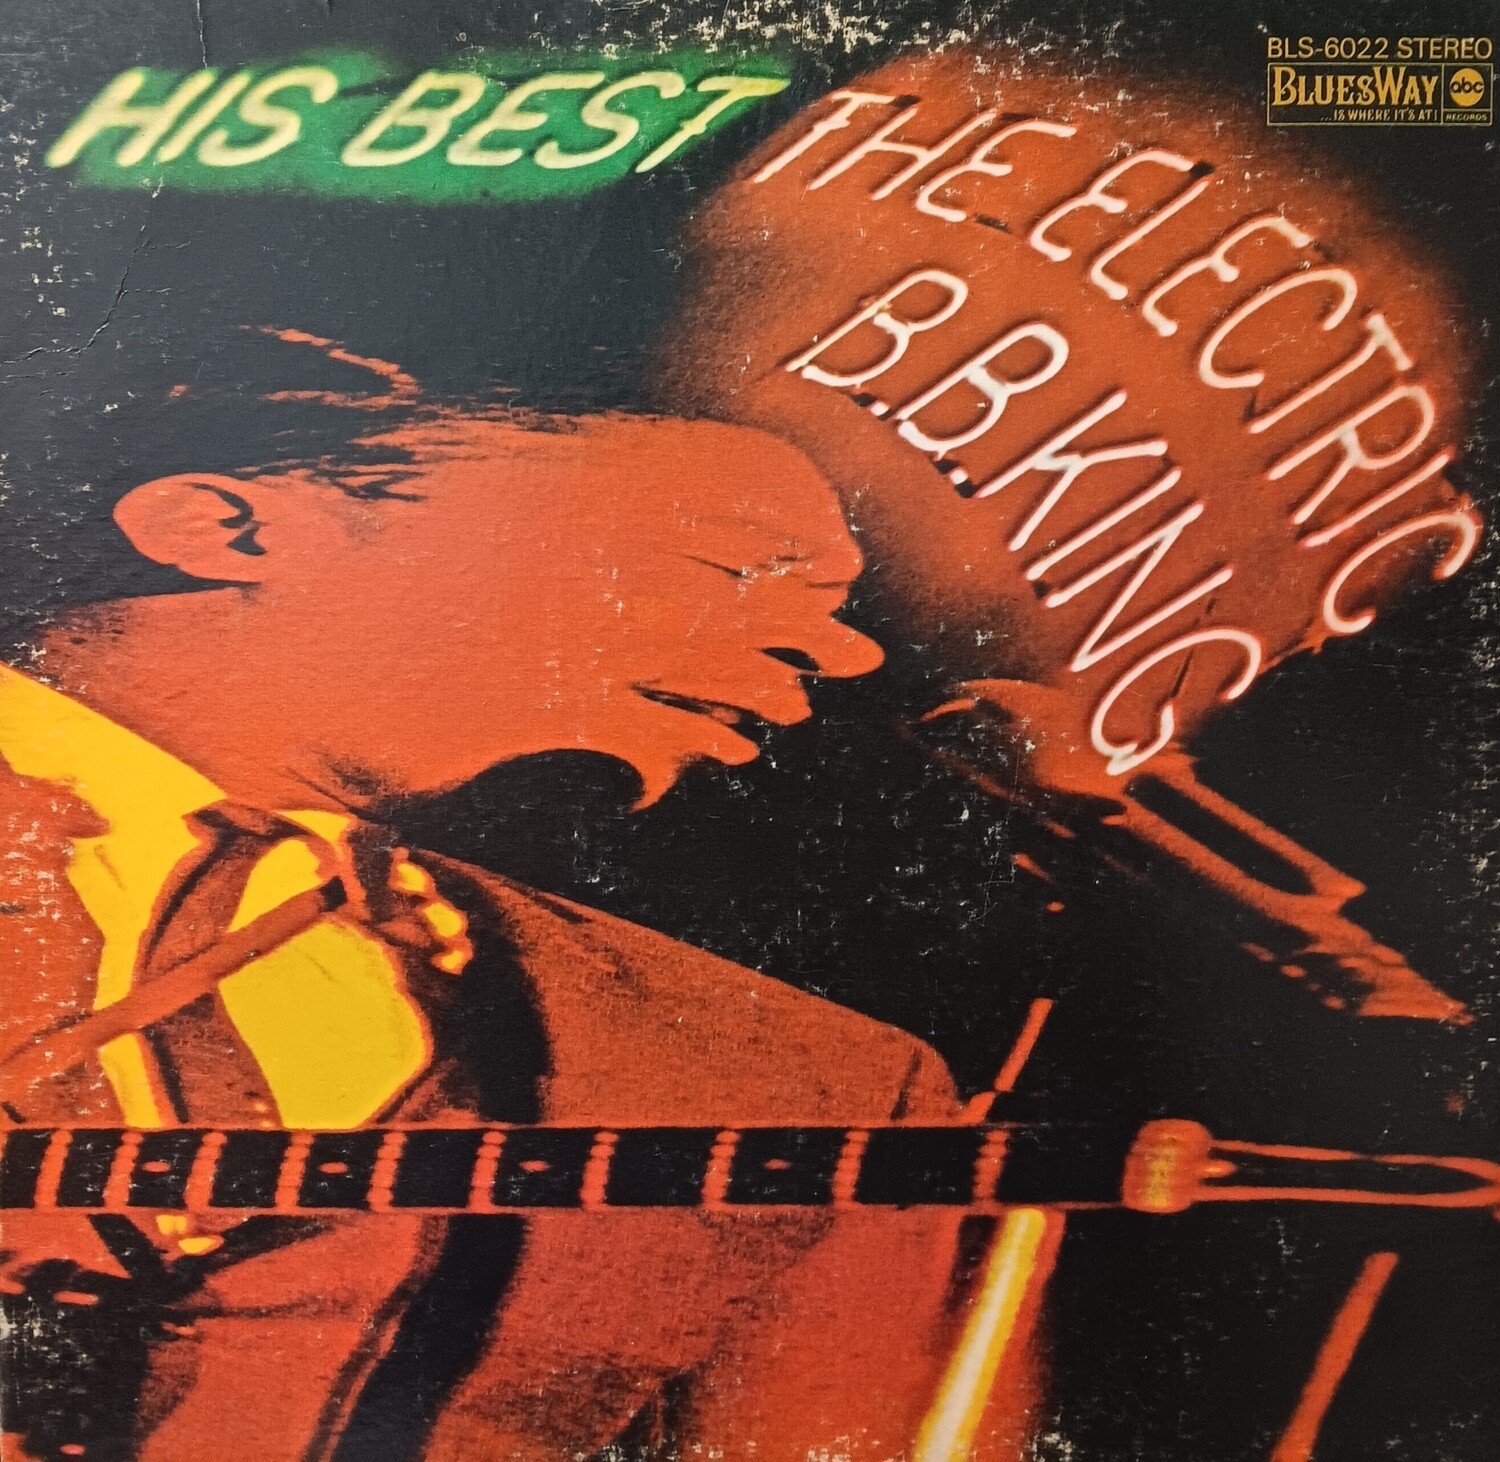 B.B. KING - His best The Electric B.B. King